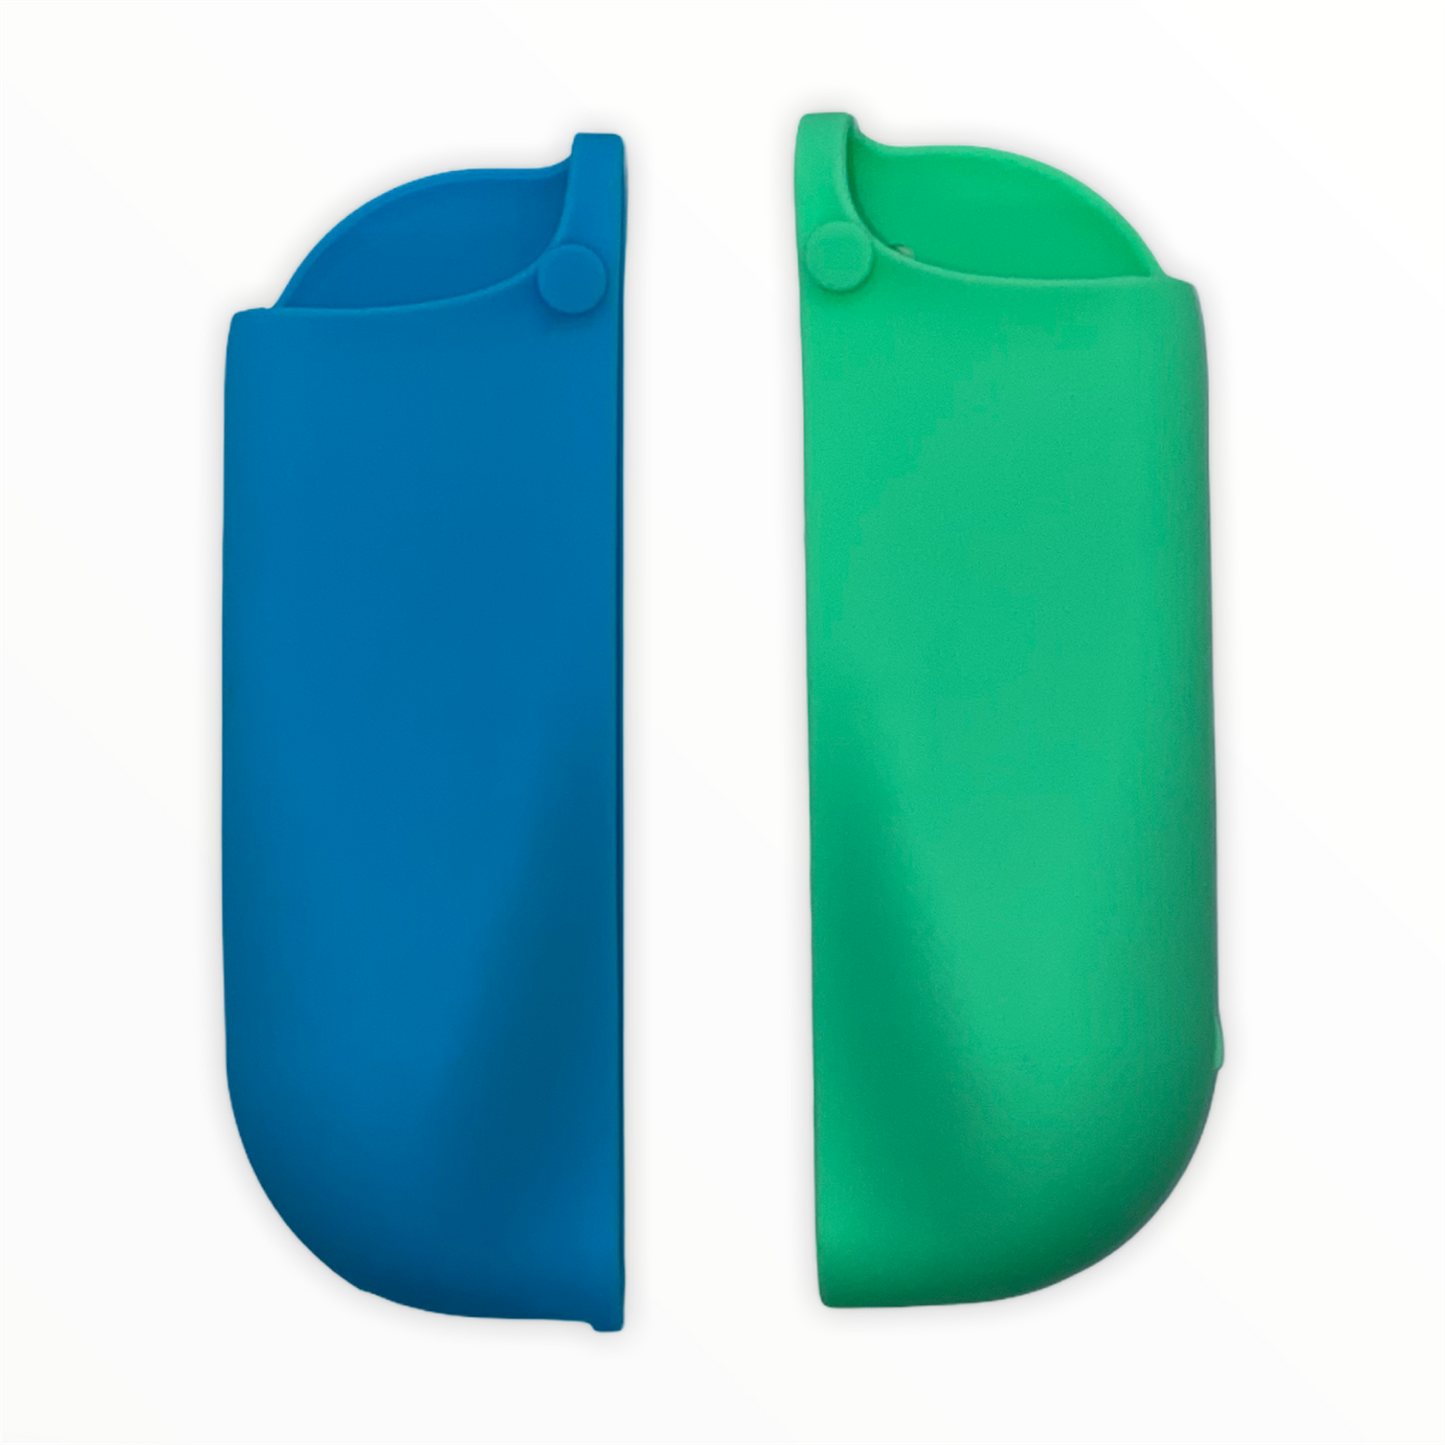 Jendore Coque de protection en silicone bleu et vert pour Nintendo Switch Joy-con